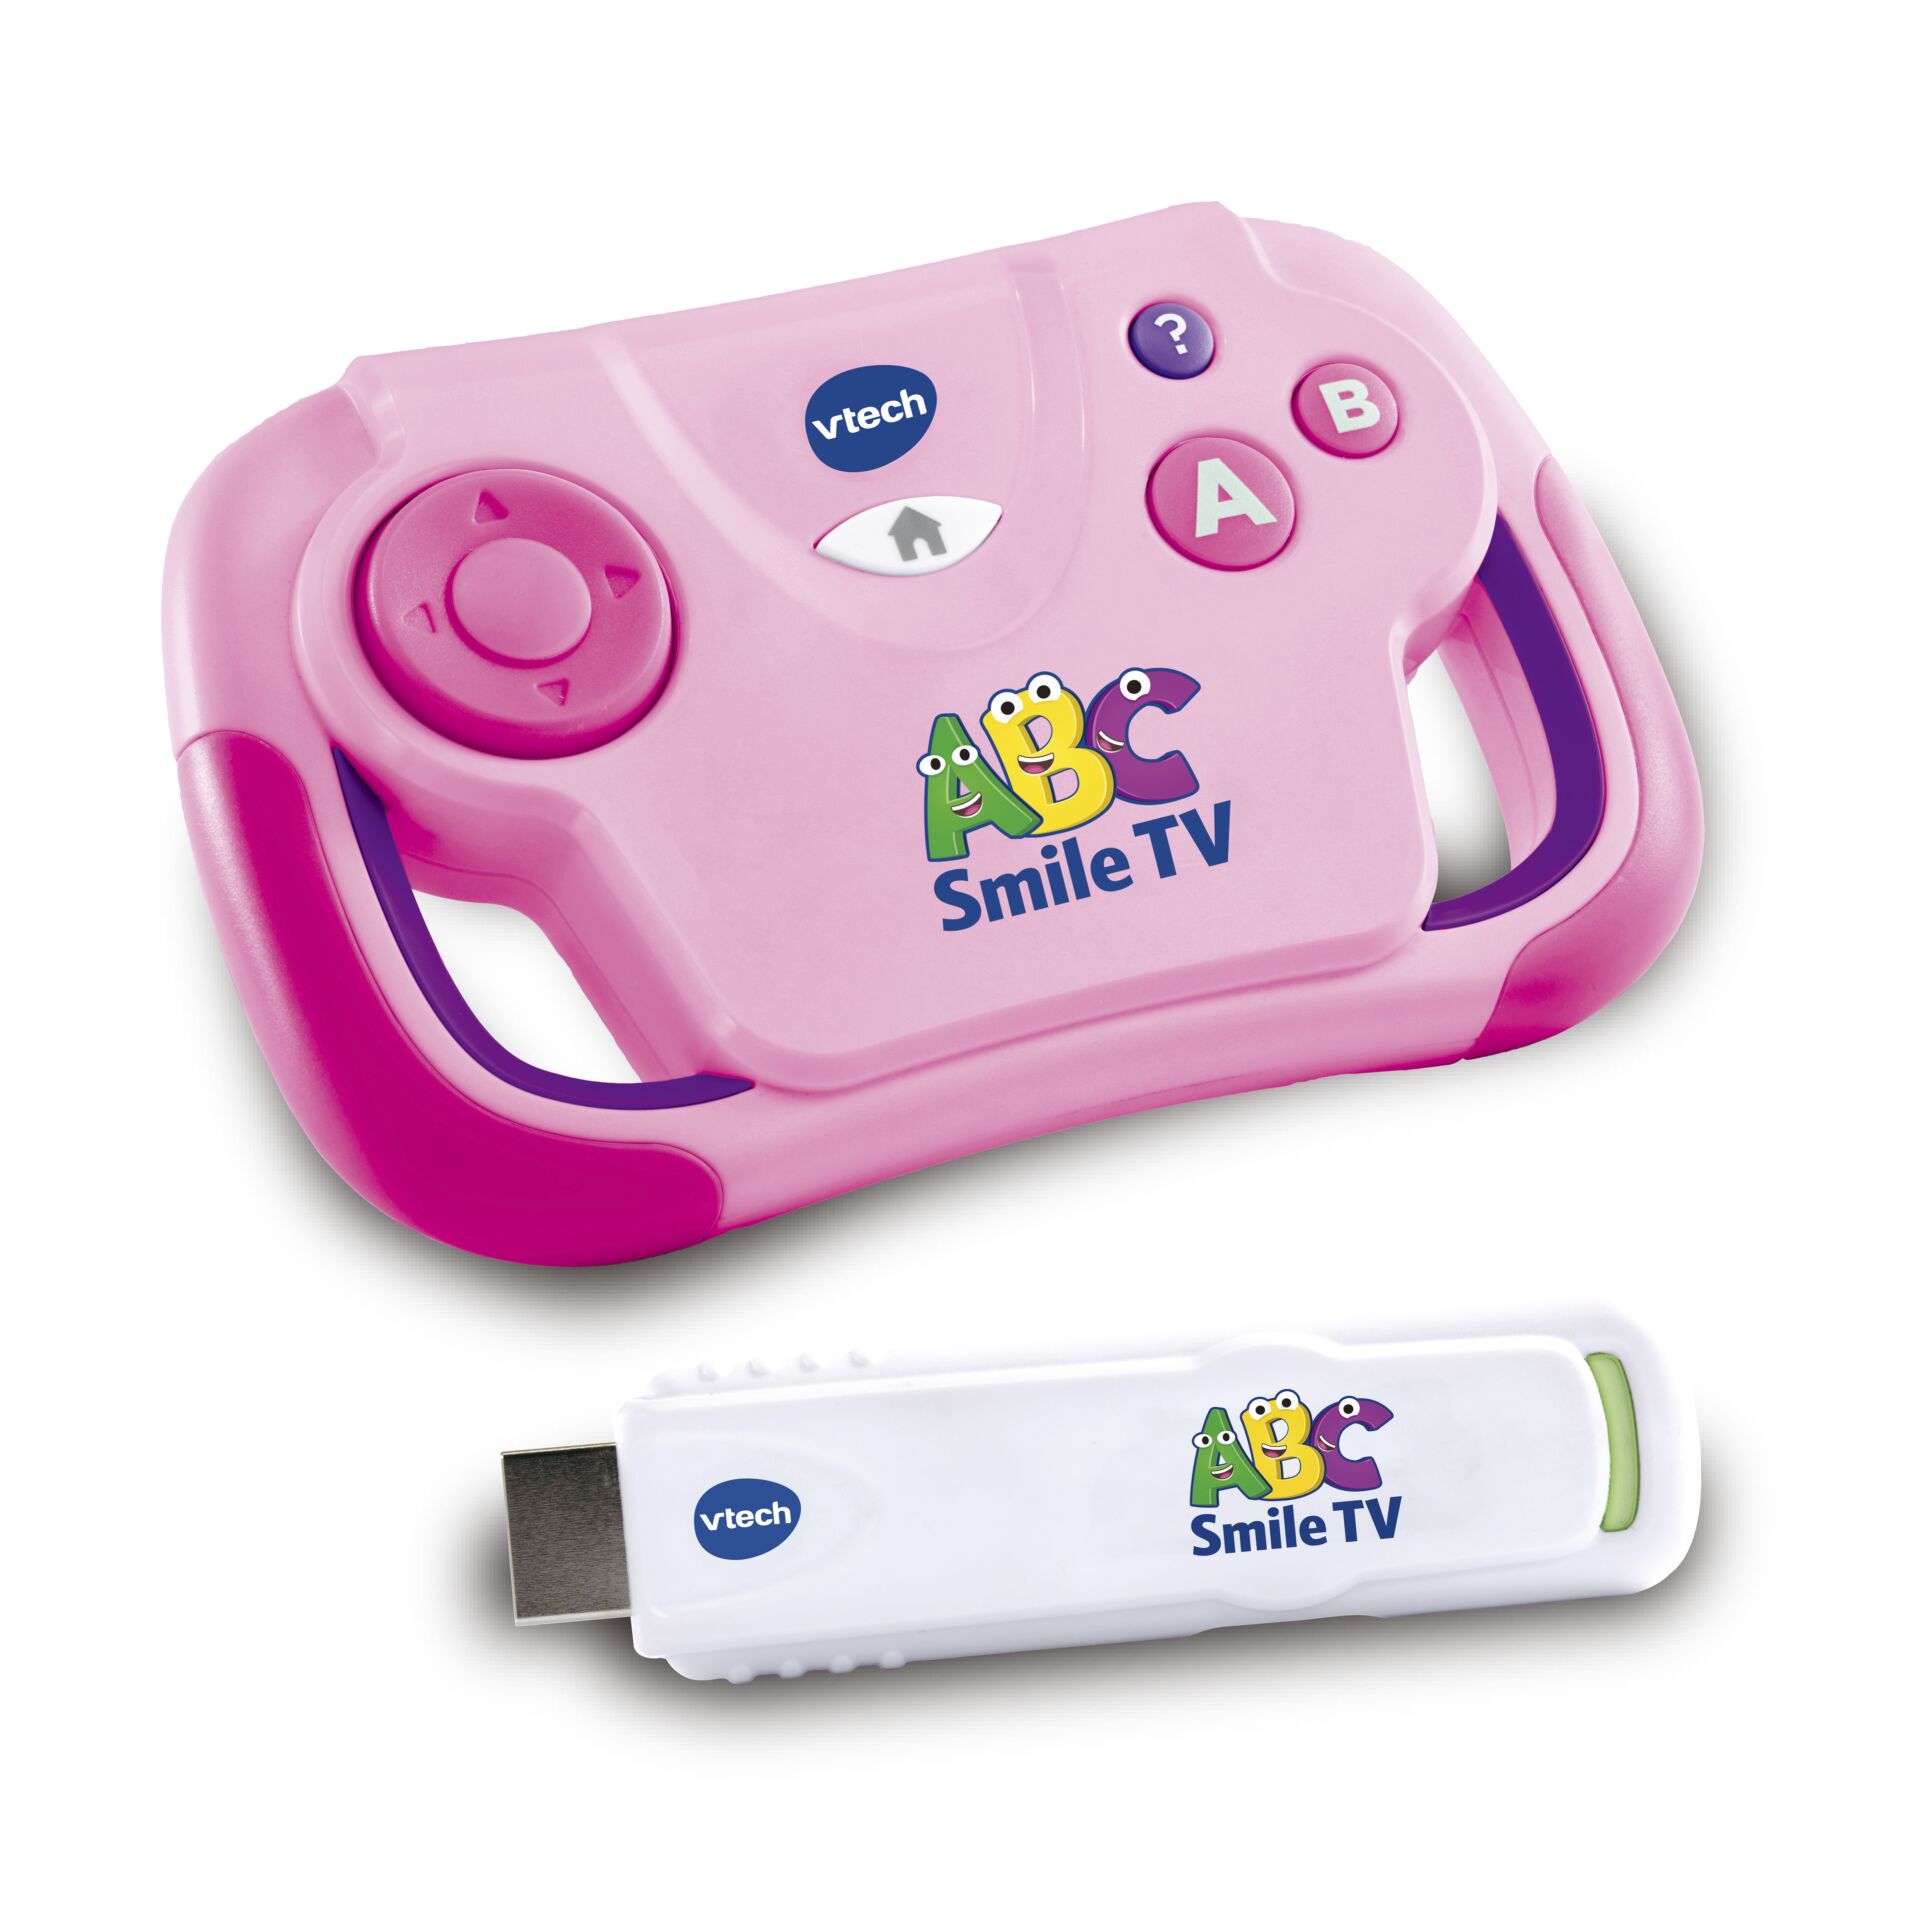 Vtech ABC Smile TV pink TV-Lernkonsole